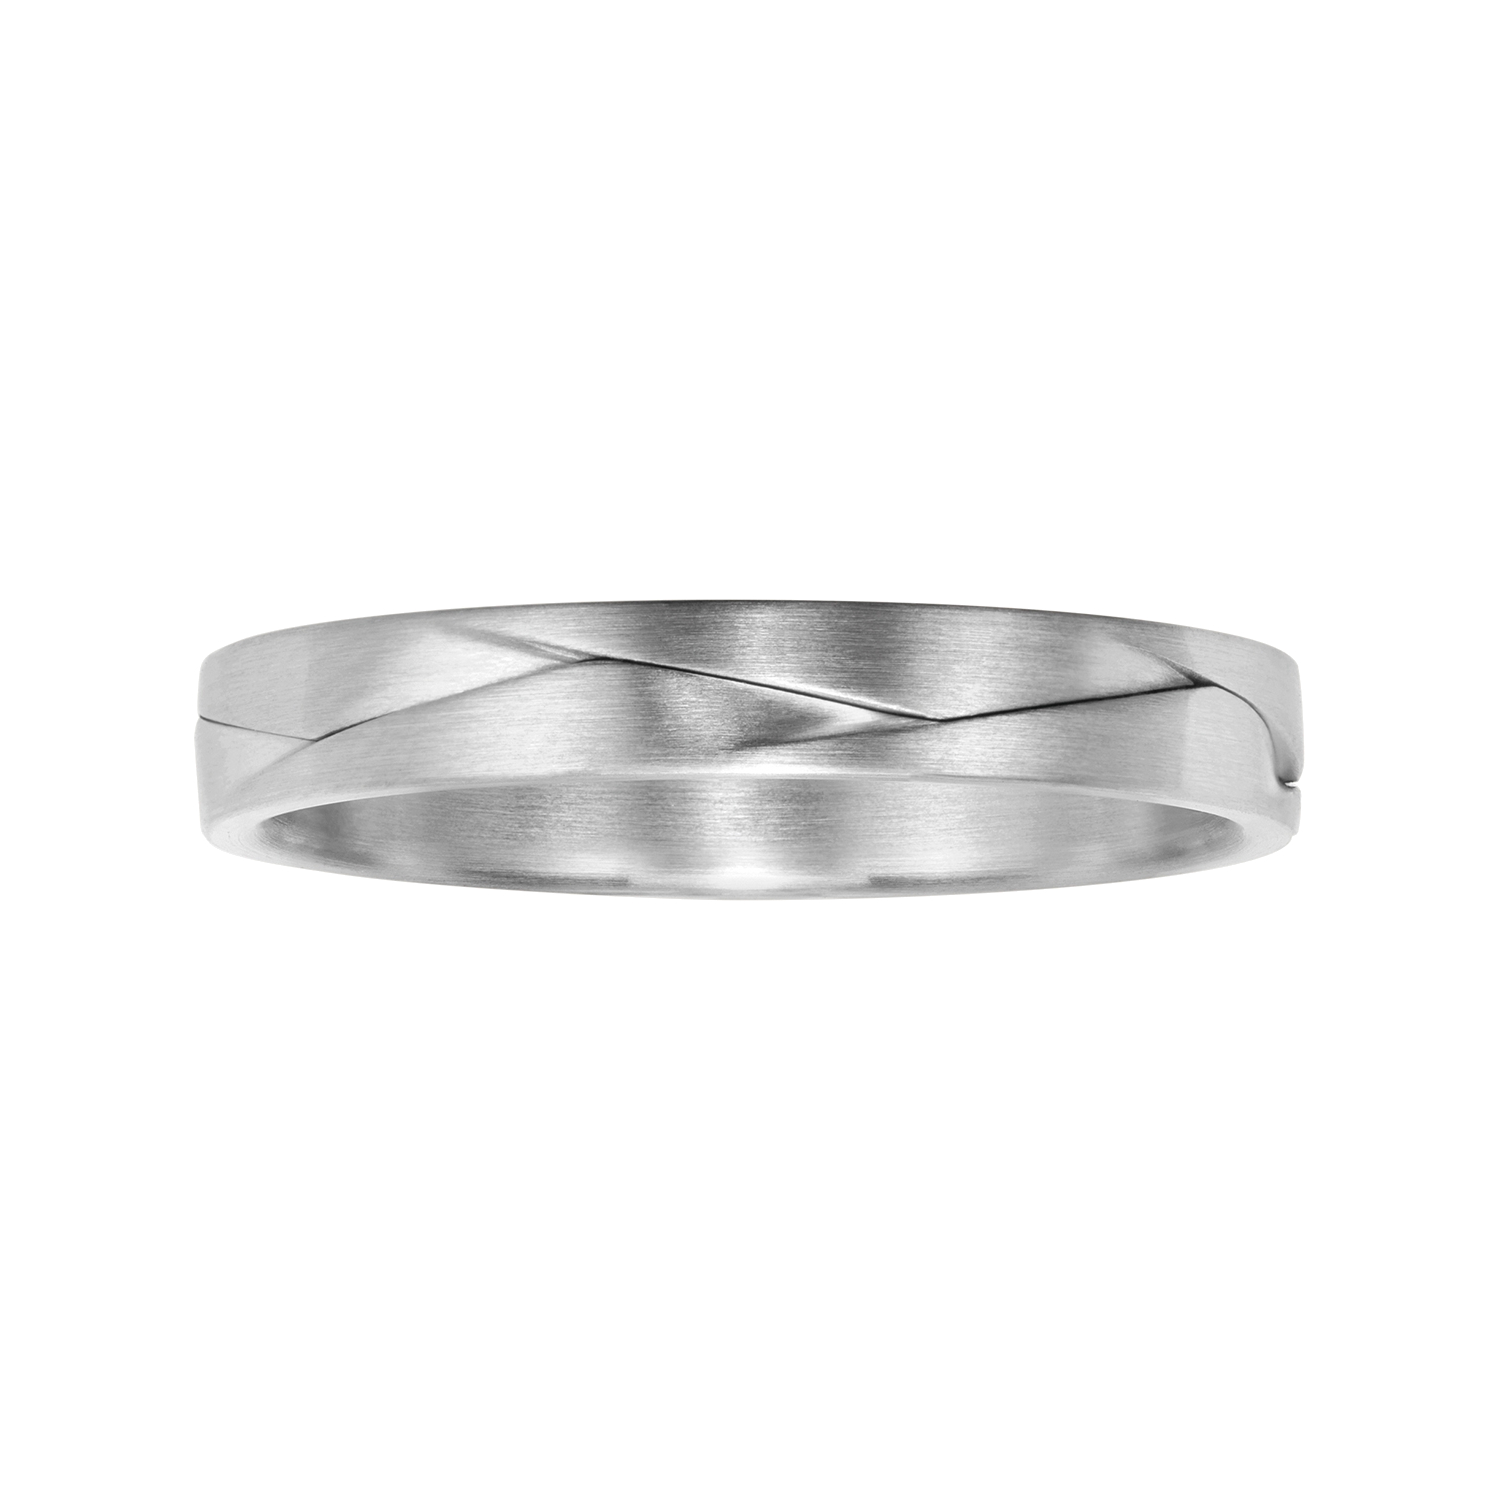  FURRER JACOT, Wedding rings, SKU: 71-29430-0-0/035-74-0-62-0 | watchphilosophy.co.uk